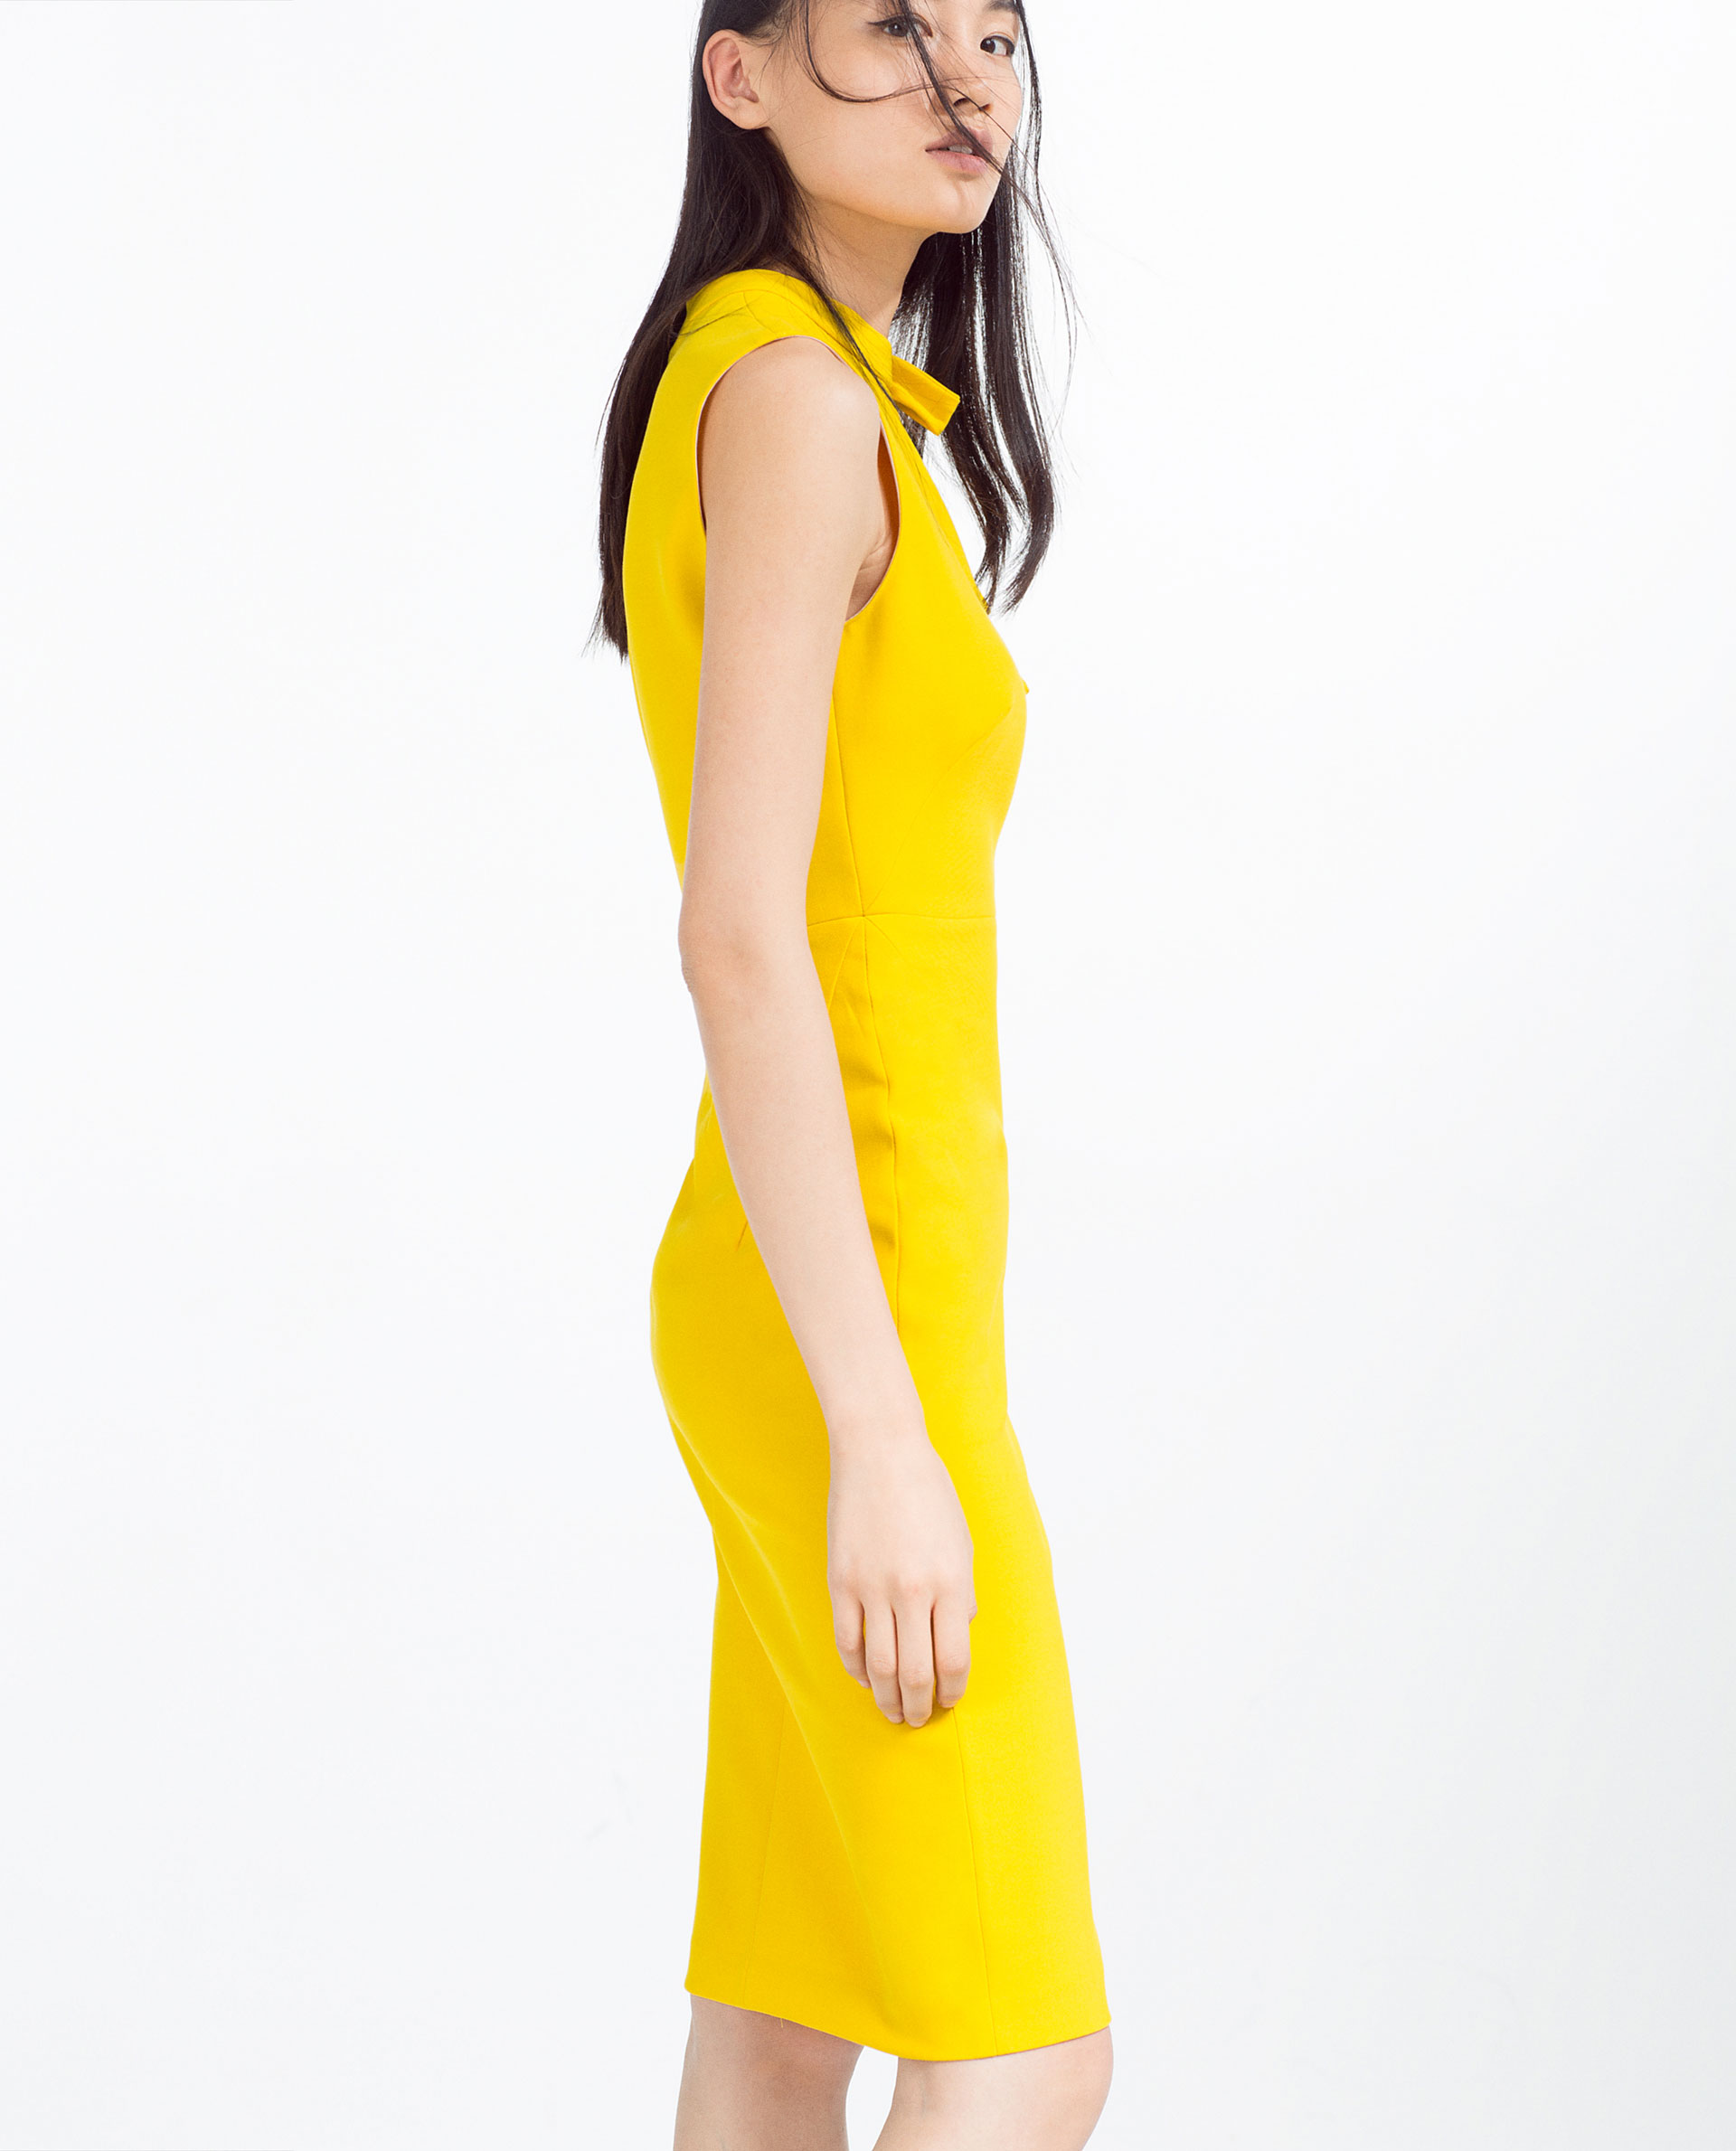 zara black and yellow dress